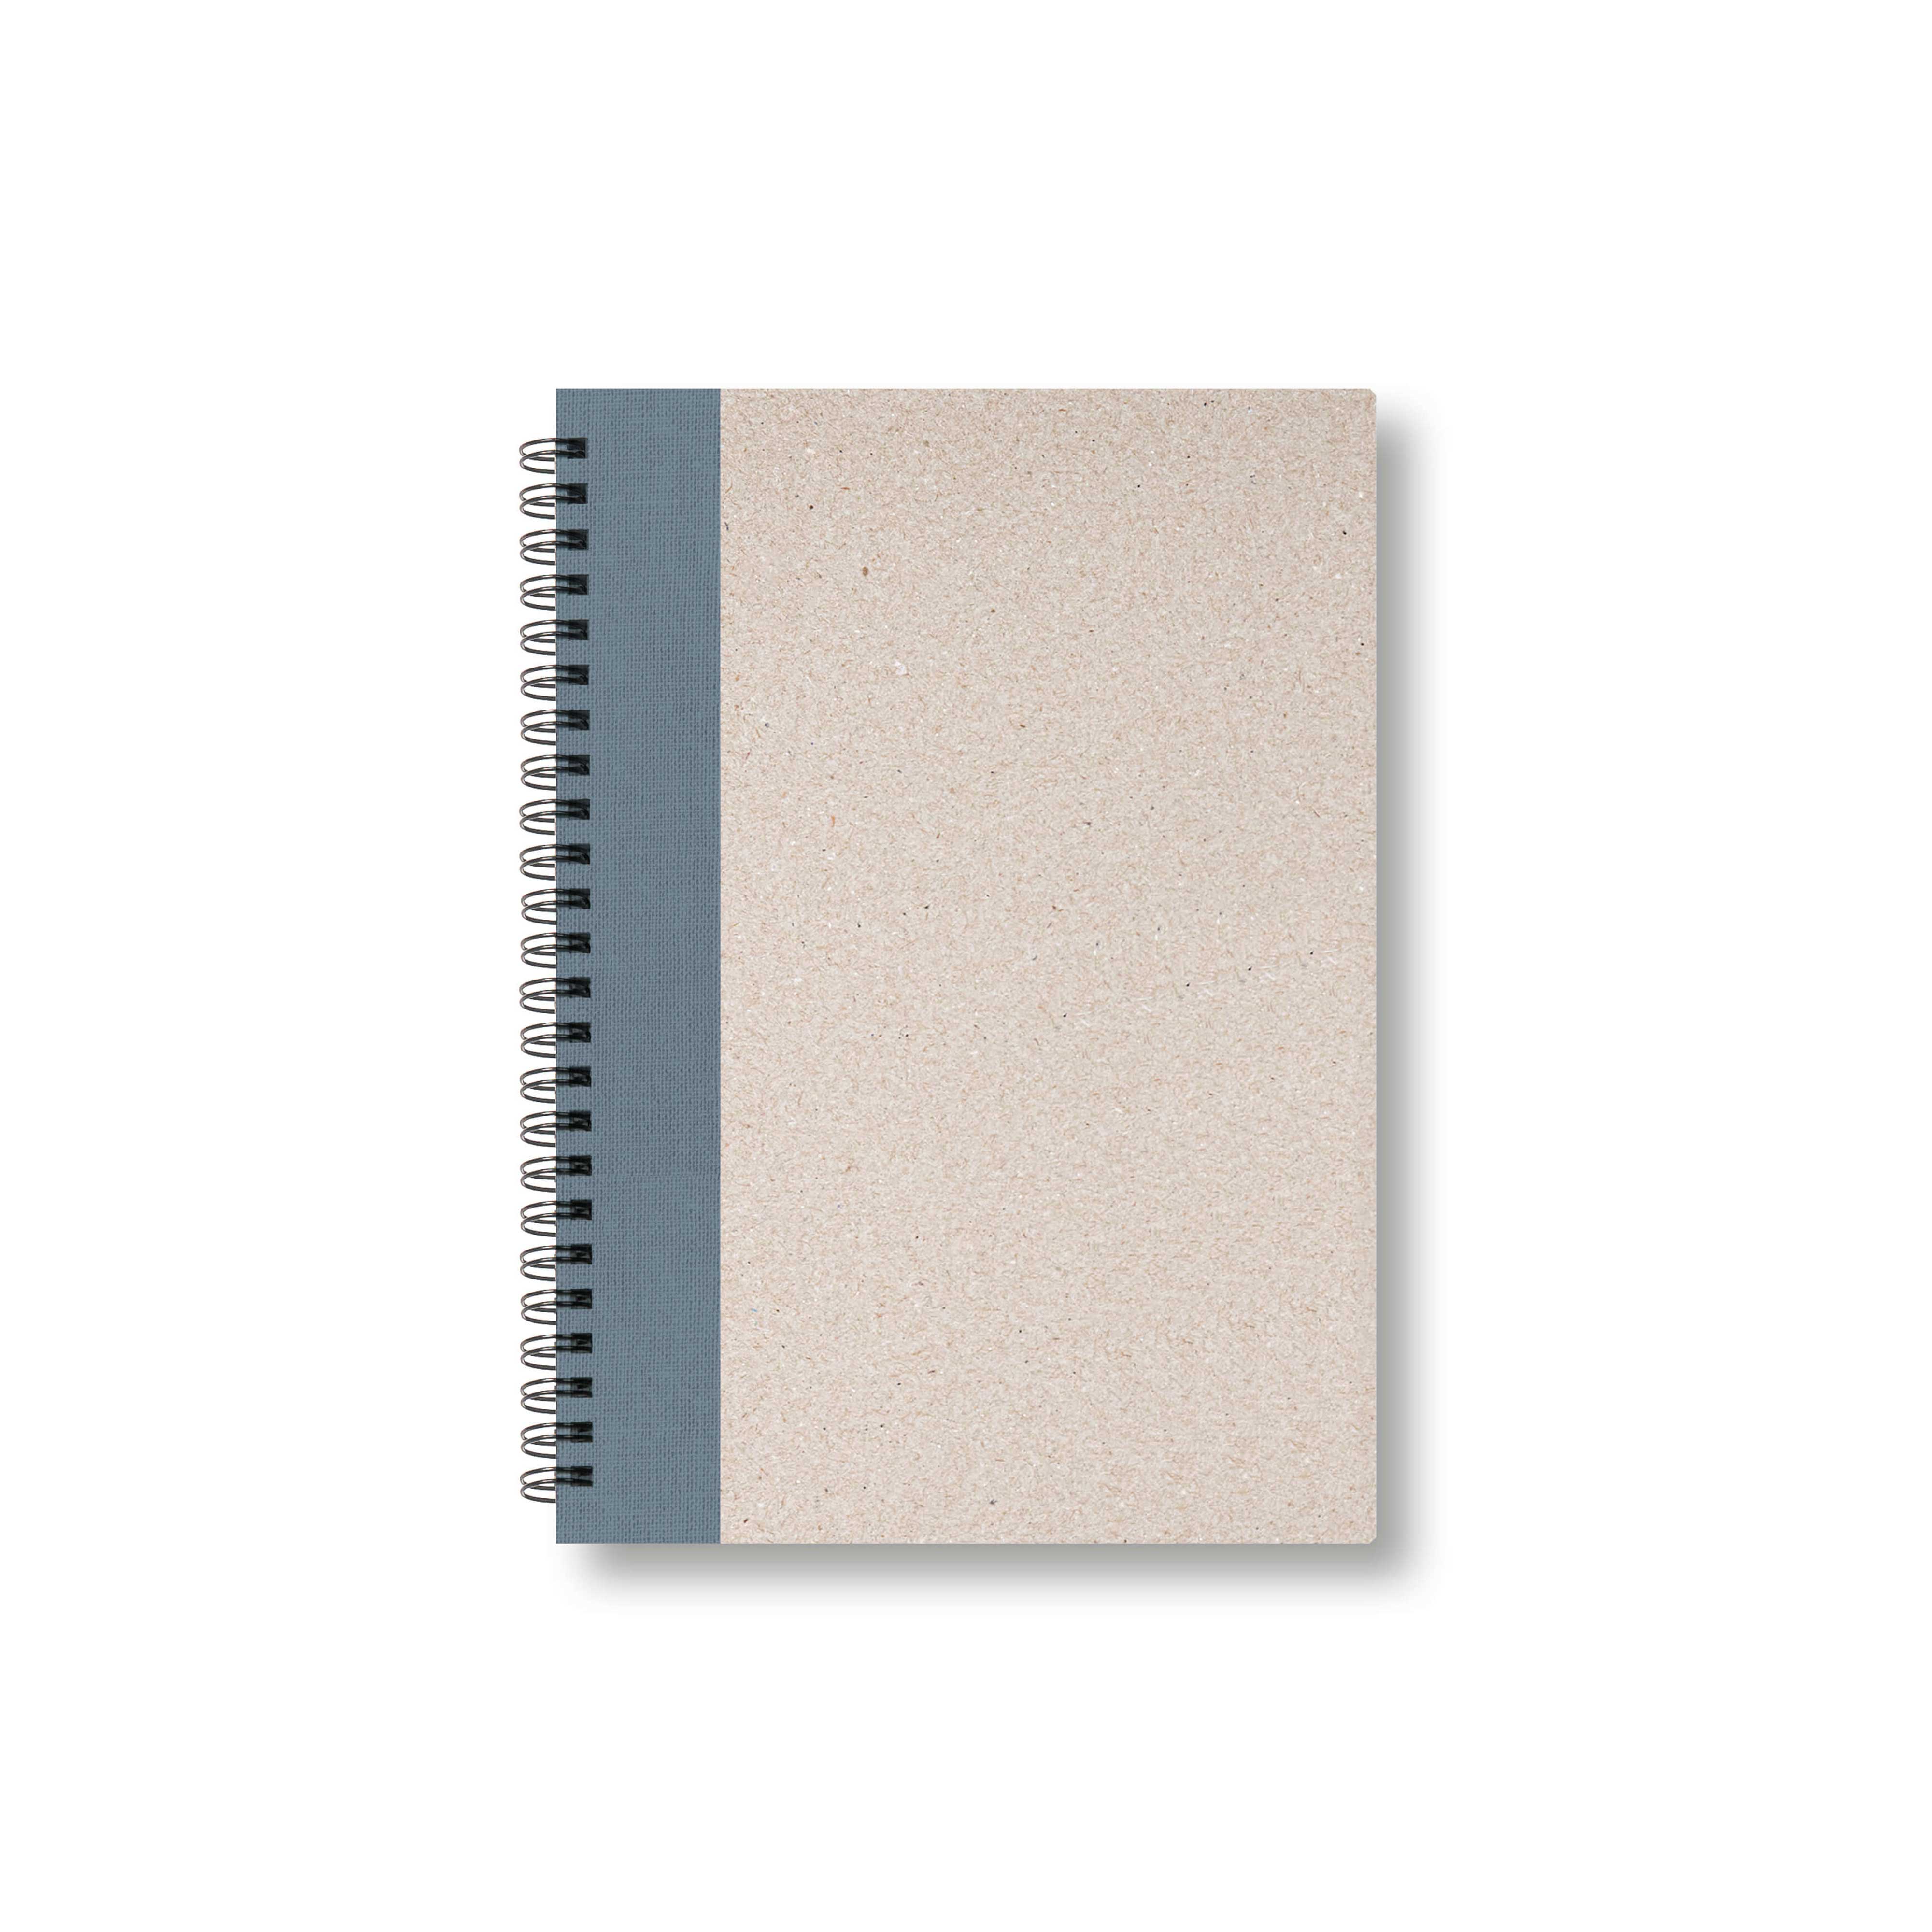 BOBO Zápisník, B6, čtverečkovaný, šedý, konfiguruj si obálku